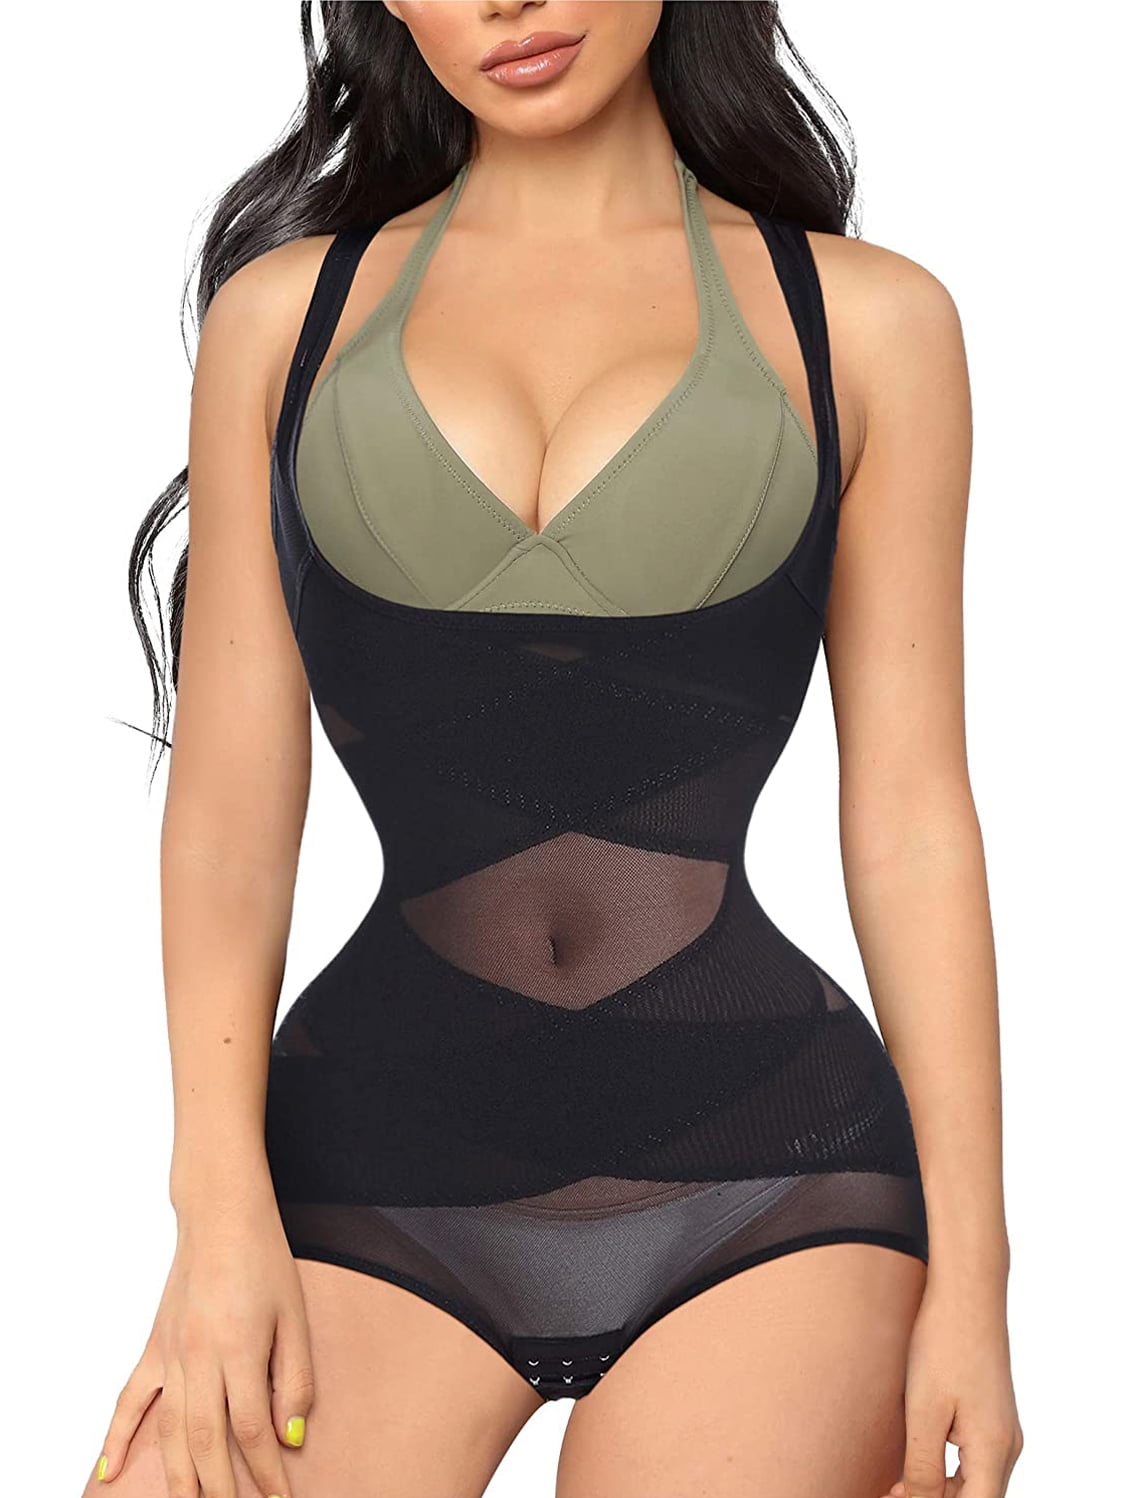 Details about   Full Body Shaper Plus Size Women Faja Redu Vest Top Hot Sauna Suit Waist Trainer 